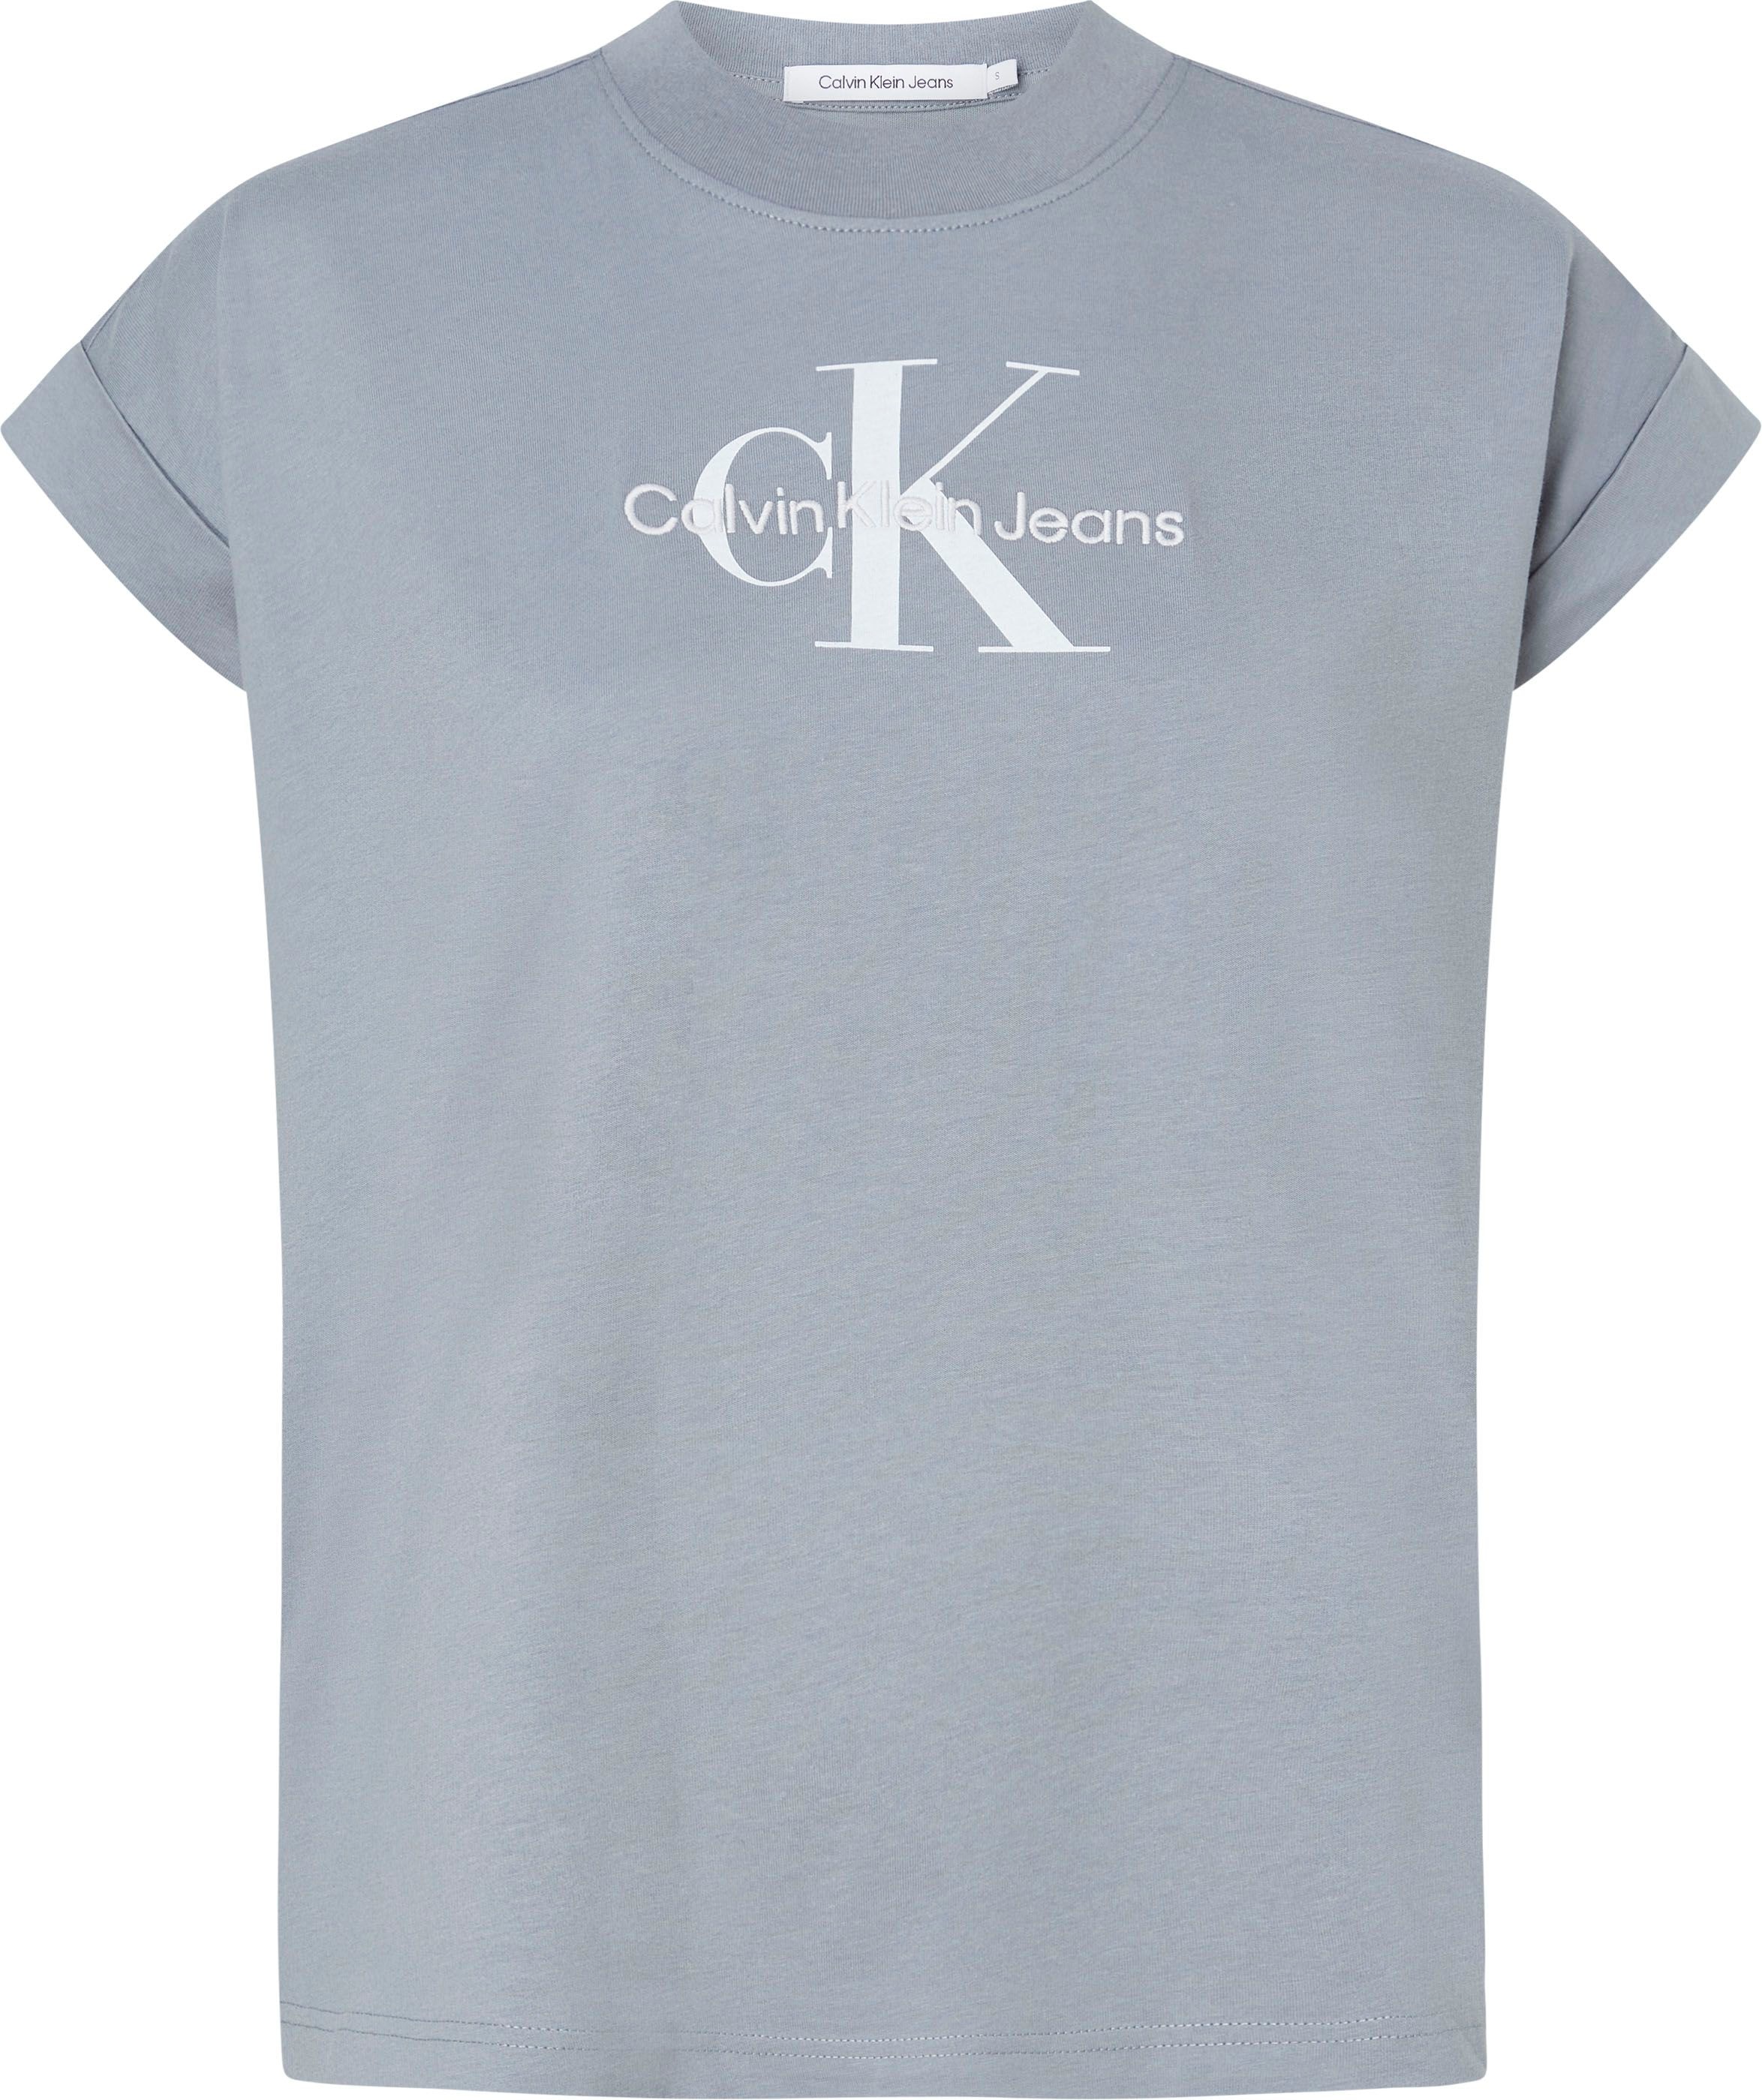 Calvin Klein Jeans T-Shirt, mit breitem Umschlagbund an den Ärmeln shoppen